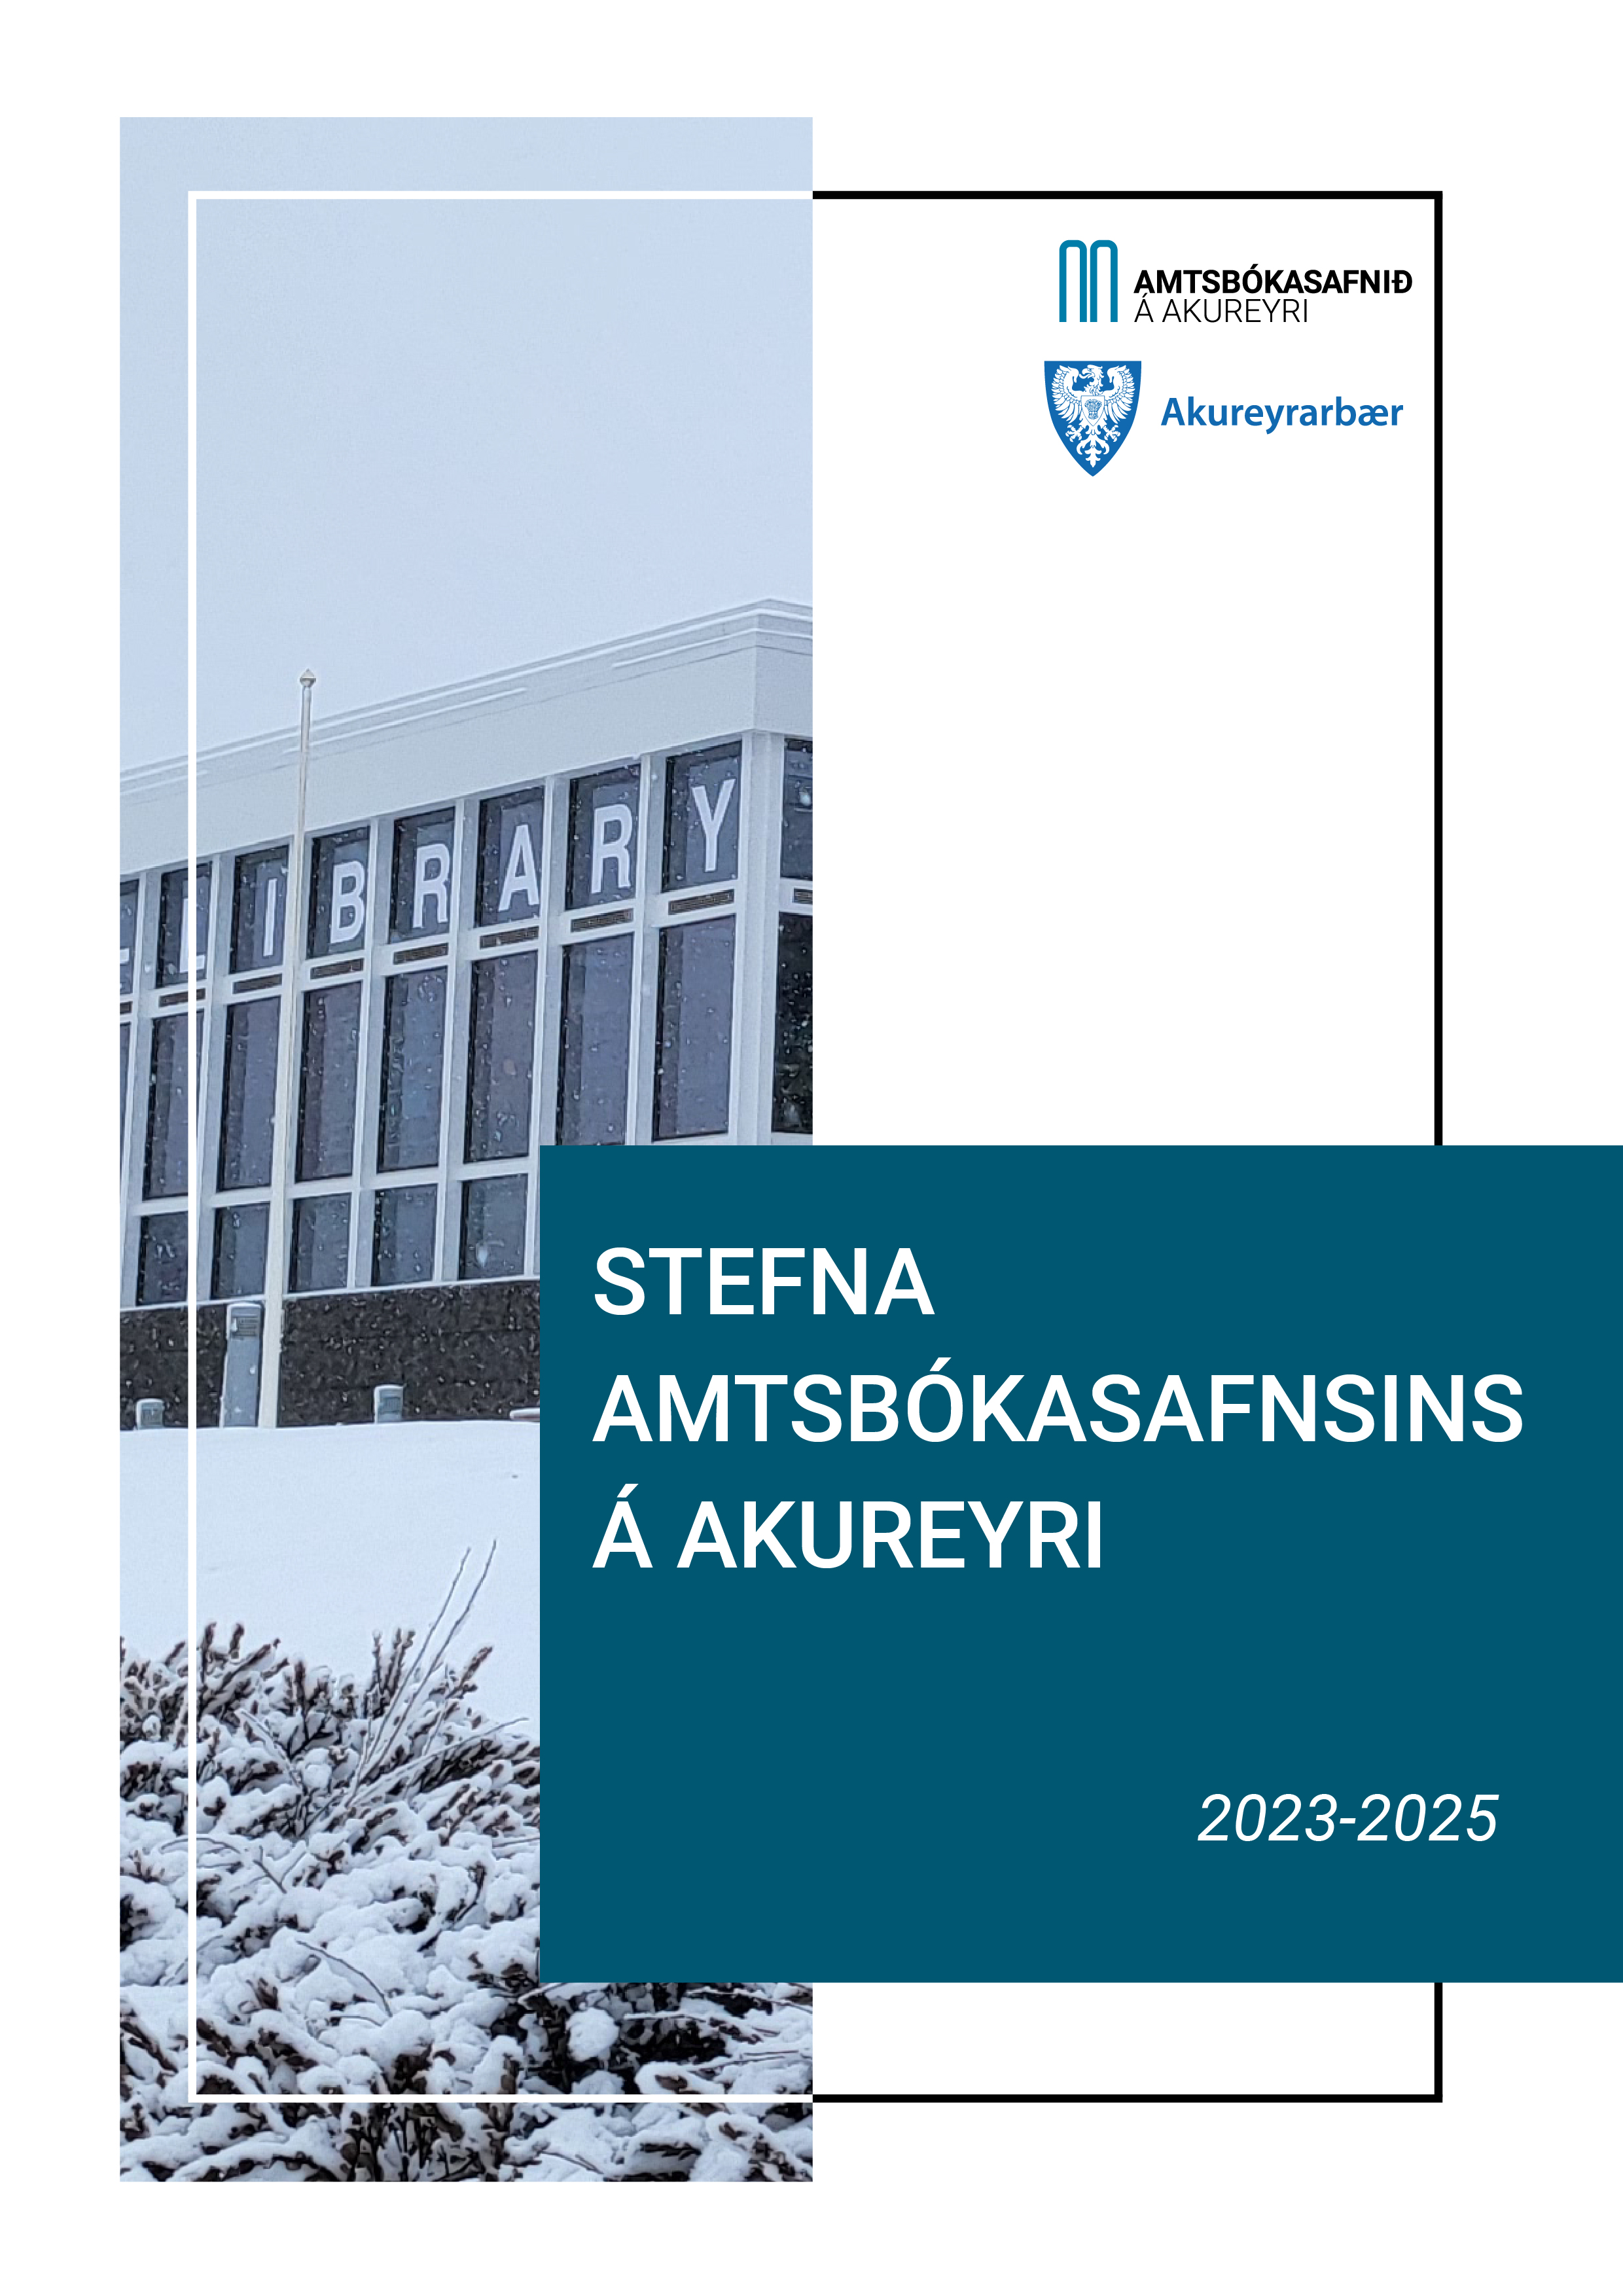 Forsíða stefnu Amtsbókasafnsins á Akureyri fyrir 2023-2025